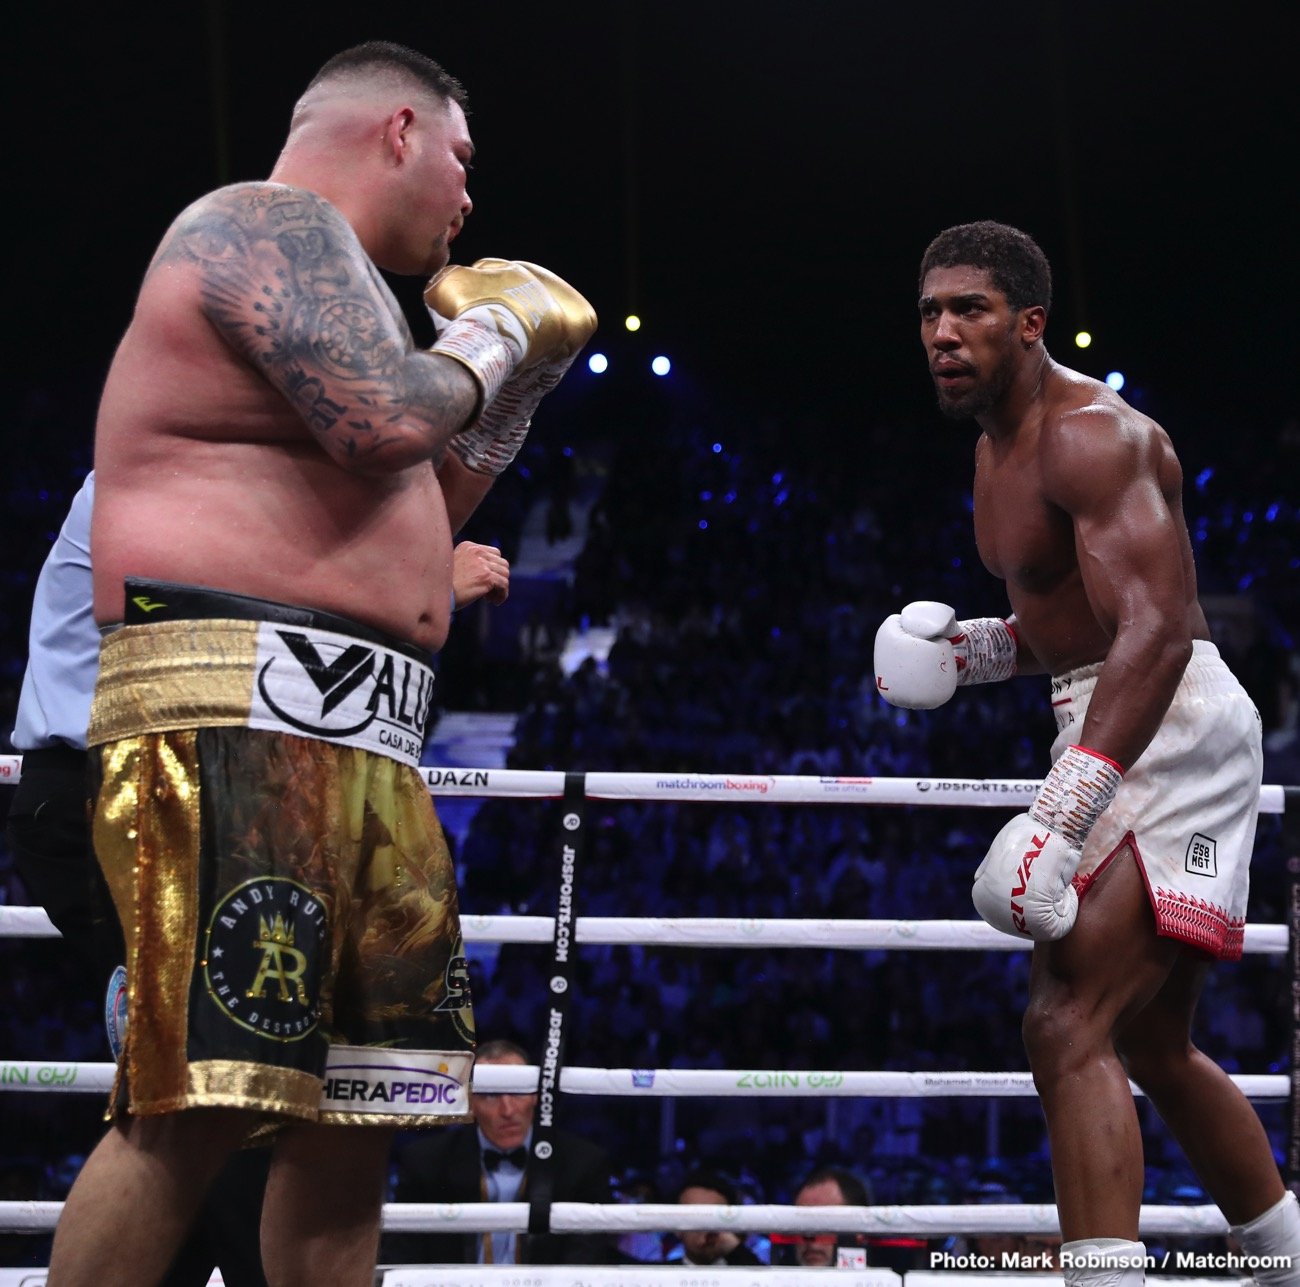 Anthony Joshua boxing photo and news image